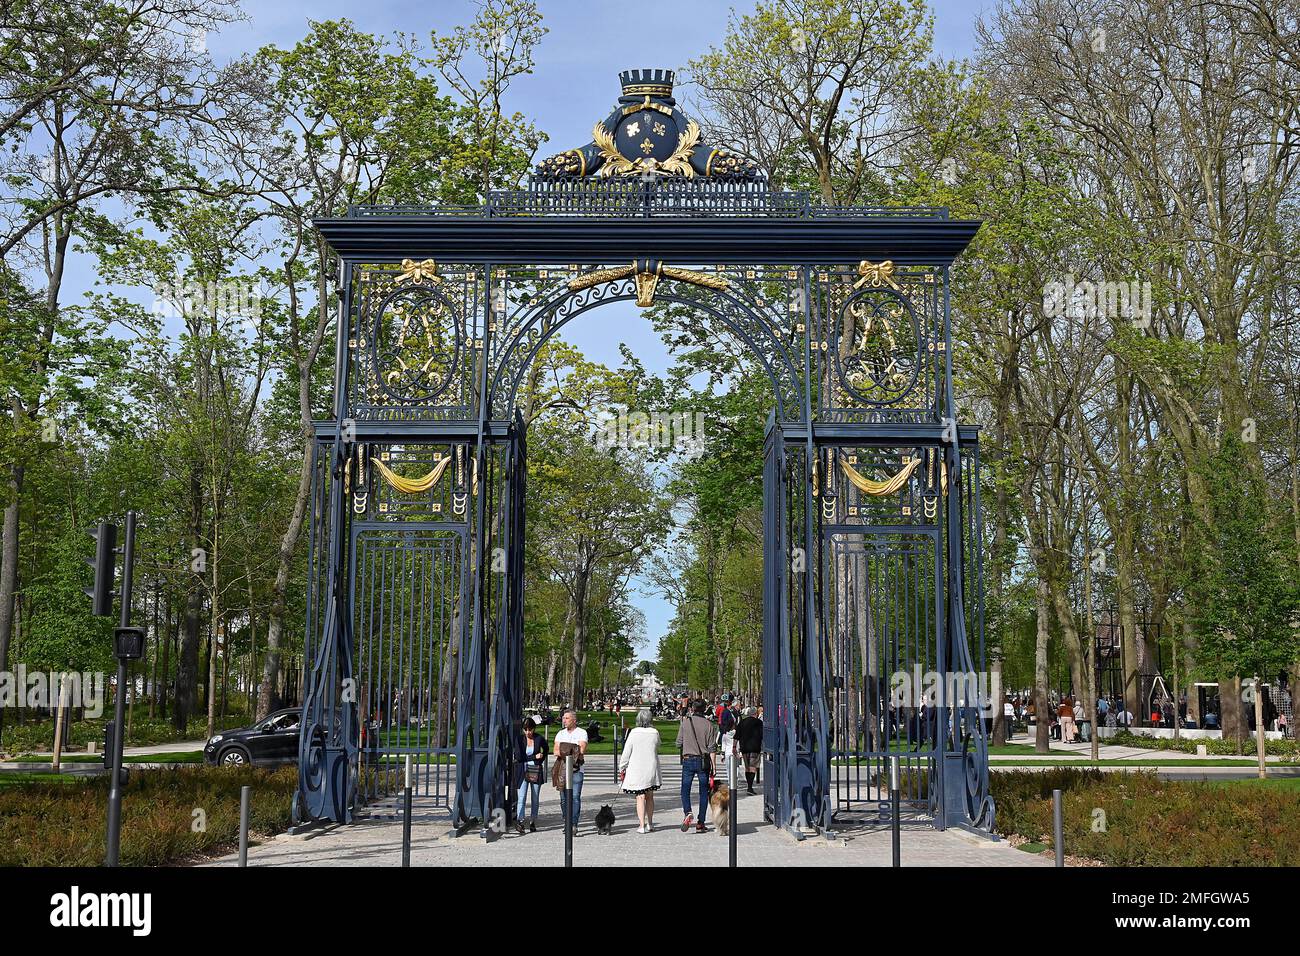 Reims, Francia nord-orientale: Affluenza primaverile al parco “Les Basses Promenades”, che si estende fino al parco “la patte d’OIE” e al “Jardin Schneit” Foto Stock